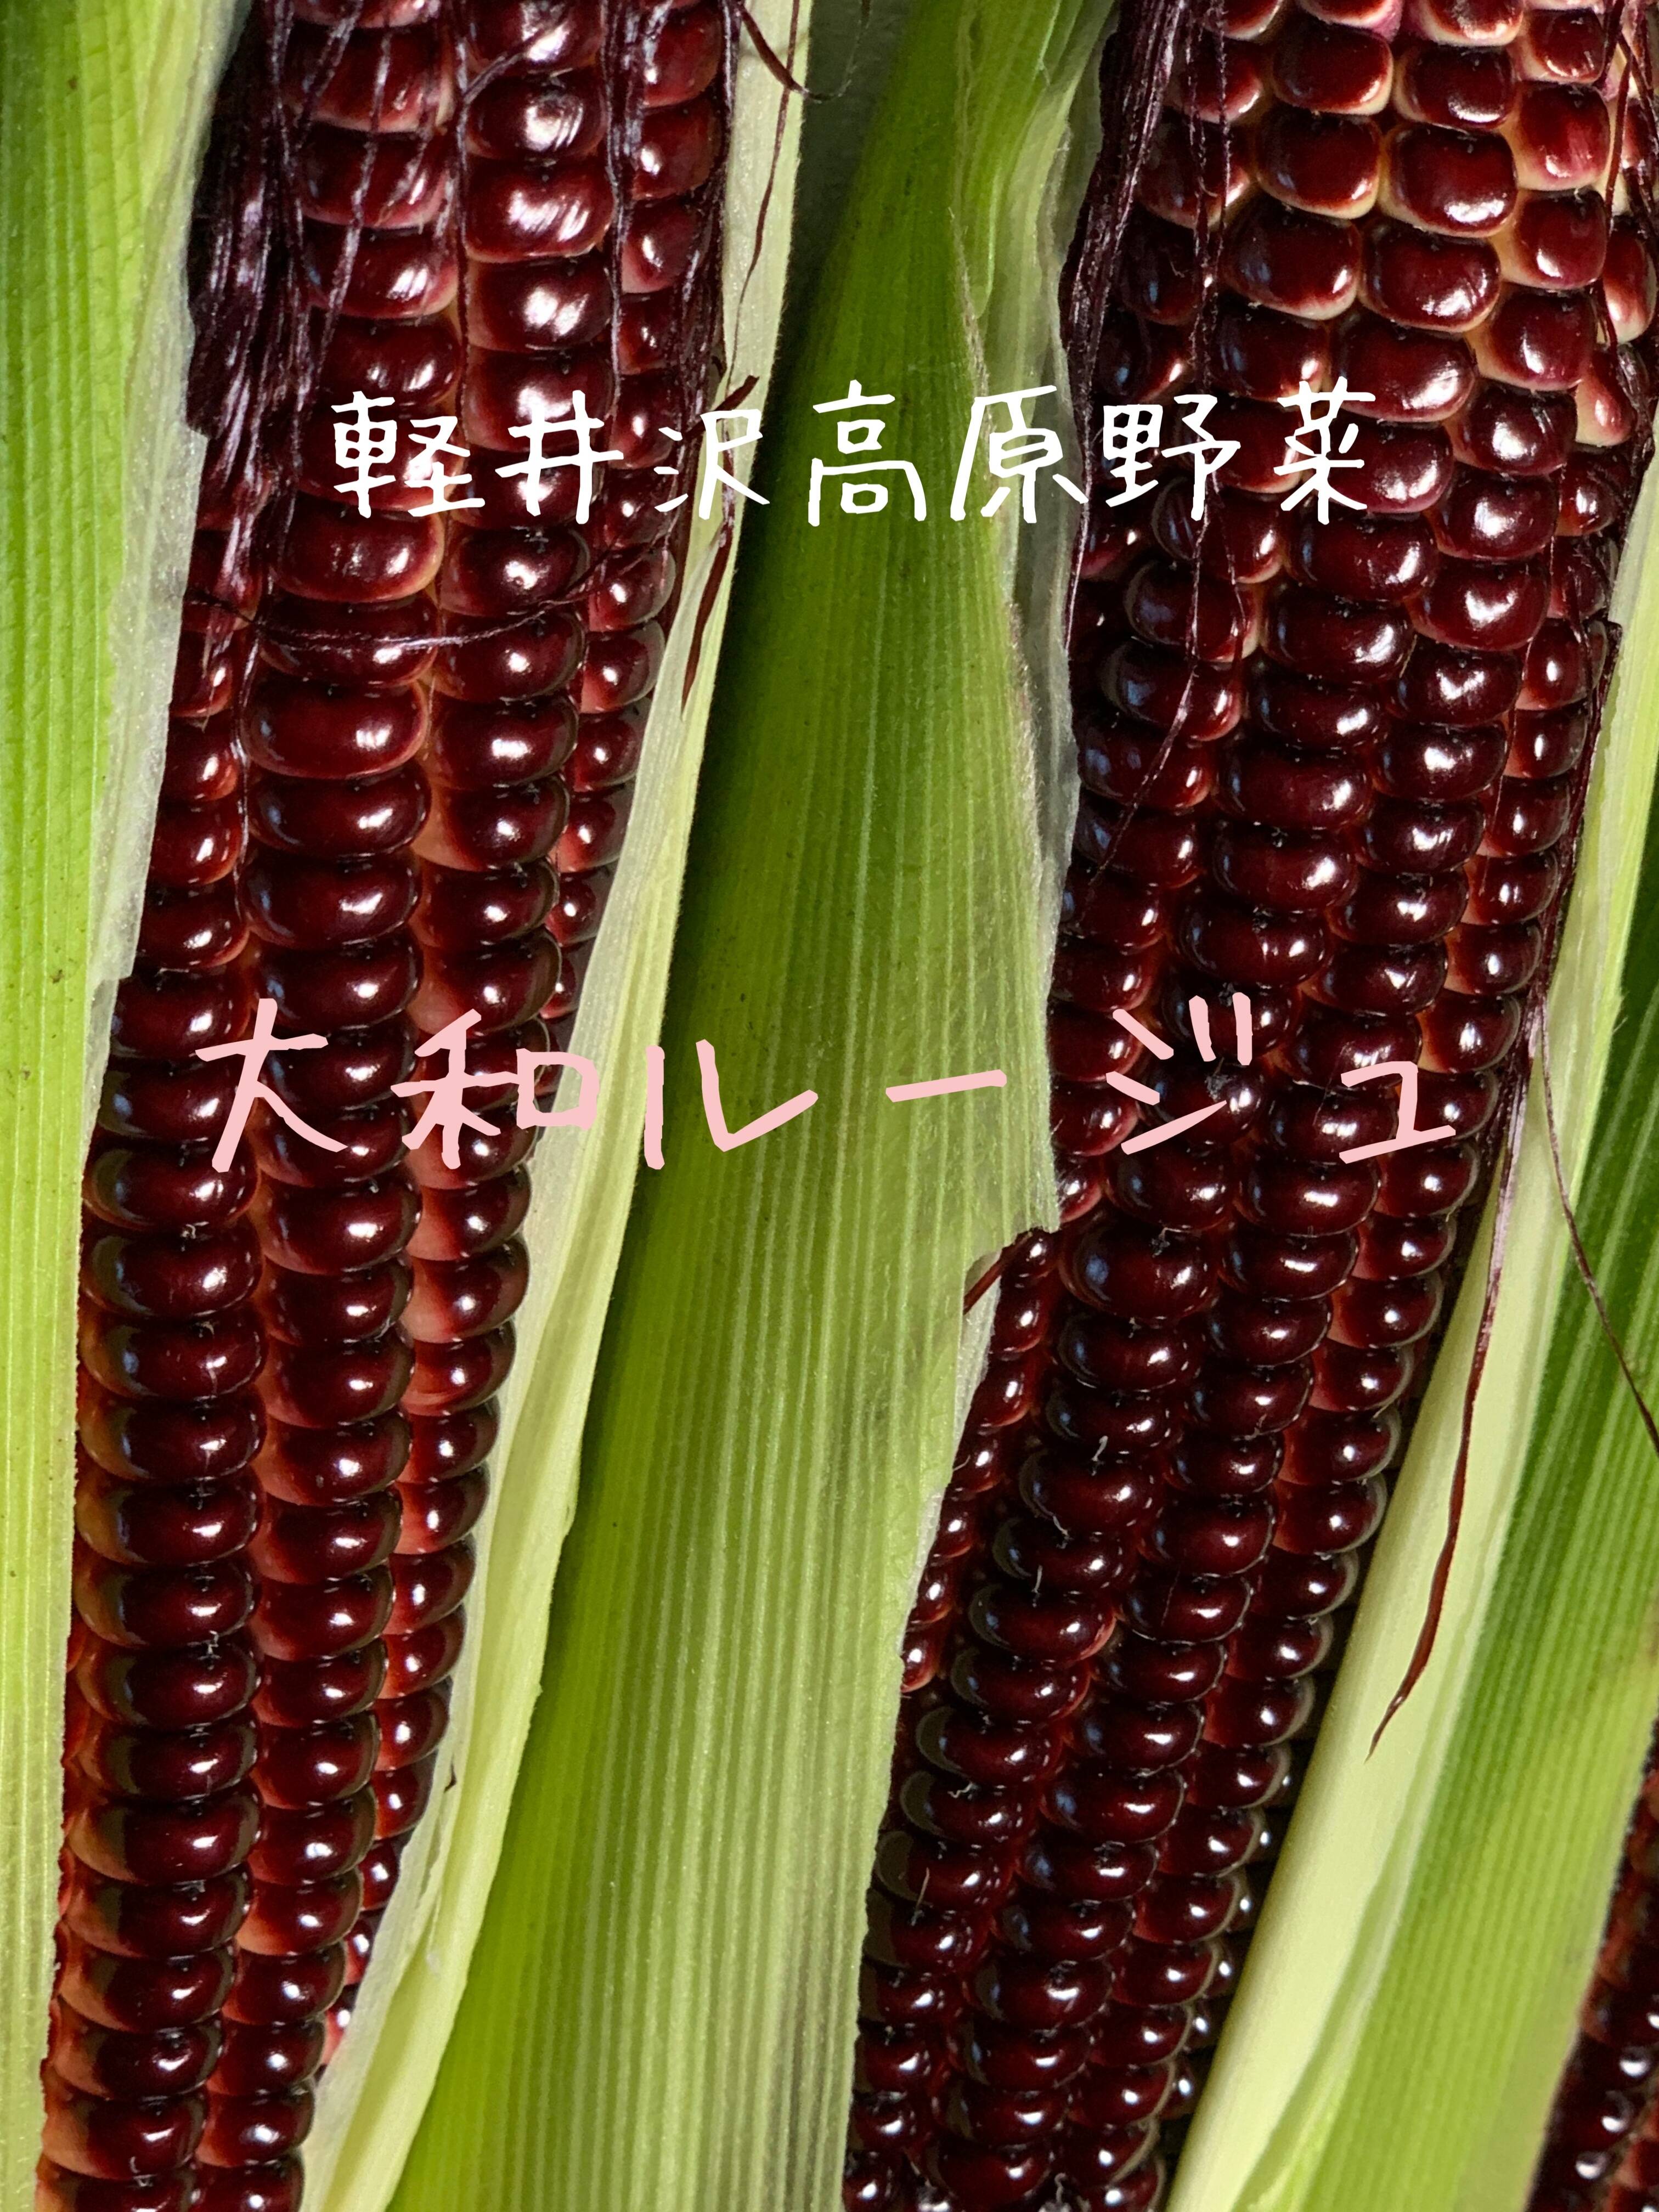 軽井沢産高原野菜 大和ルージュ 赤いスイートコーン とうもろこし小さめ6本セット